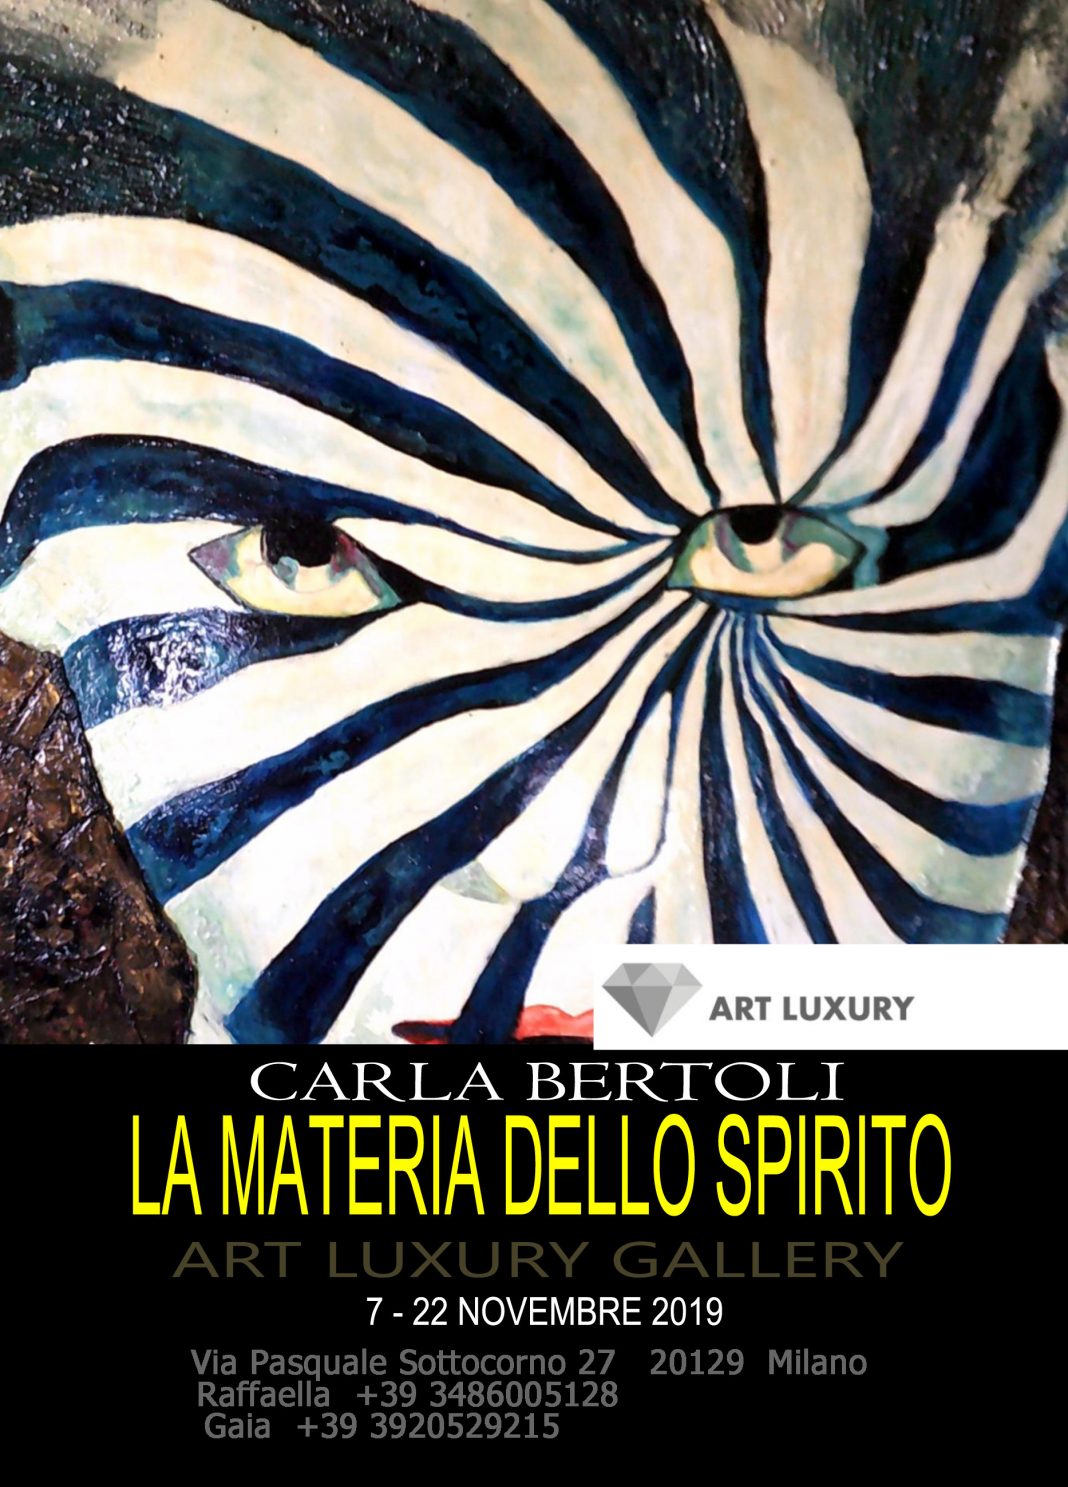 Carla Bertoli – La materia dello spiritohttps://www.exibart.com/repository/media/formidable/11/La-Materia-Dello-Spirito-Carla-Bertoli--1068x1487.jpg